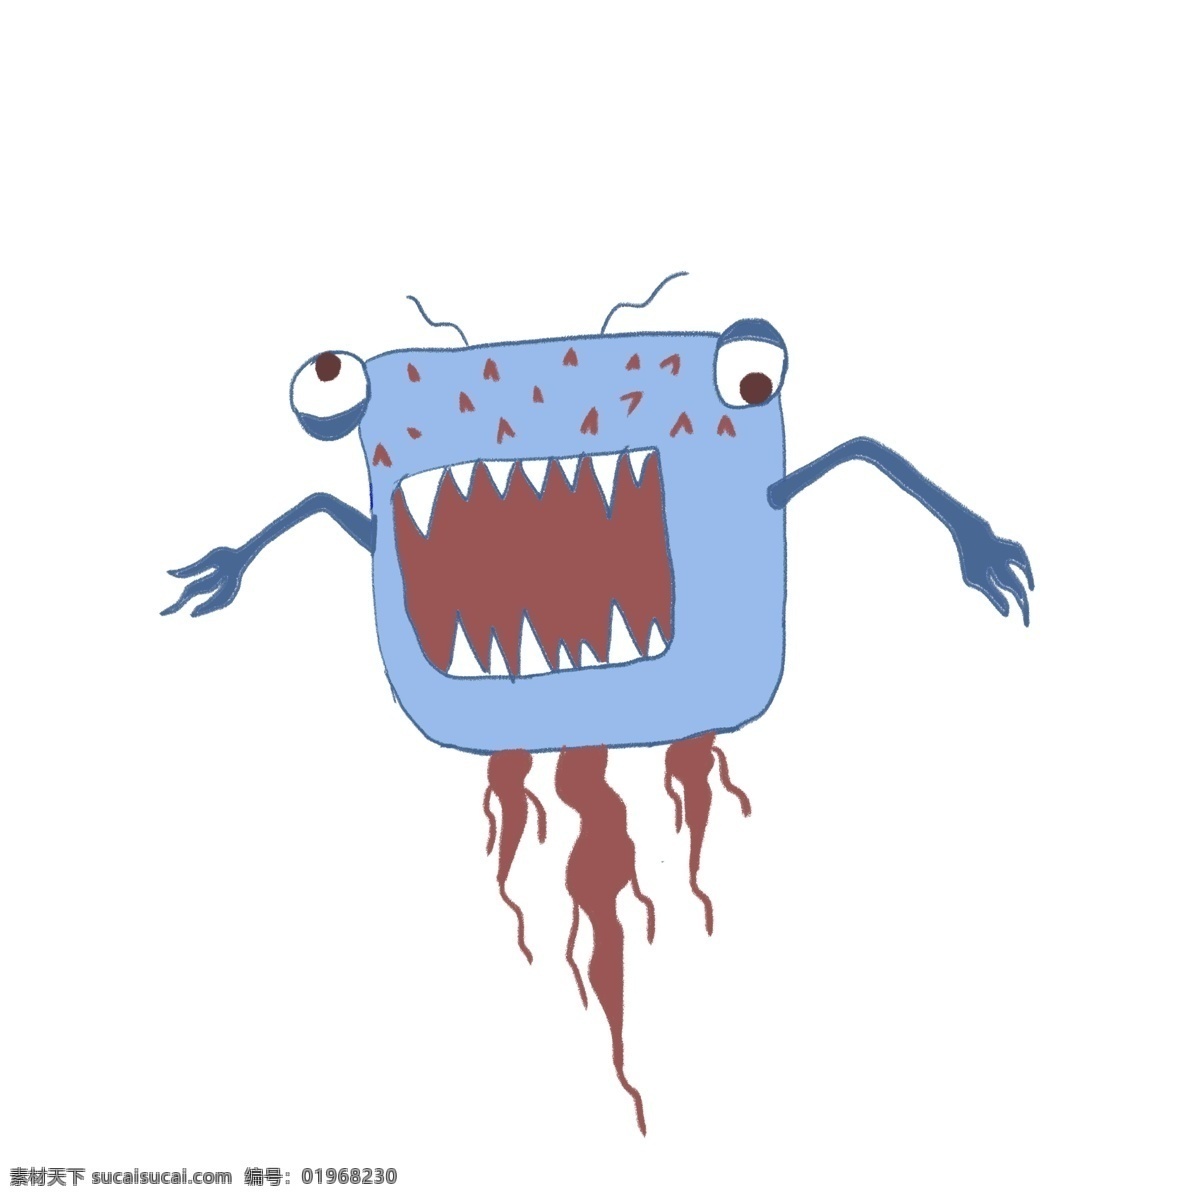 可怕 有害 细菌 插画 可怕的细菌 卡通插画 细菌插画 病菌插画 传染细菌 有害病菌 蓝色的胳膊